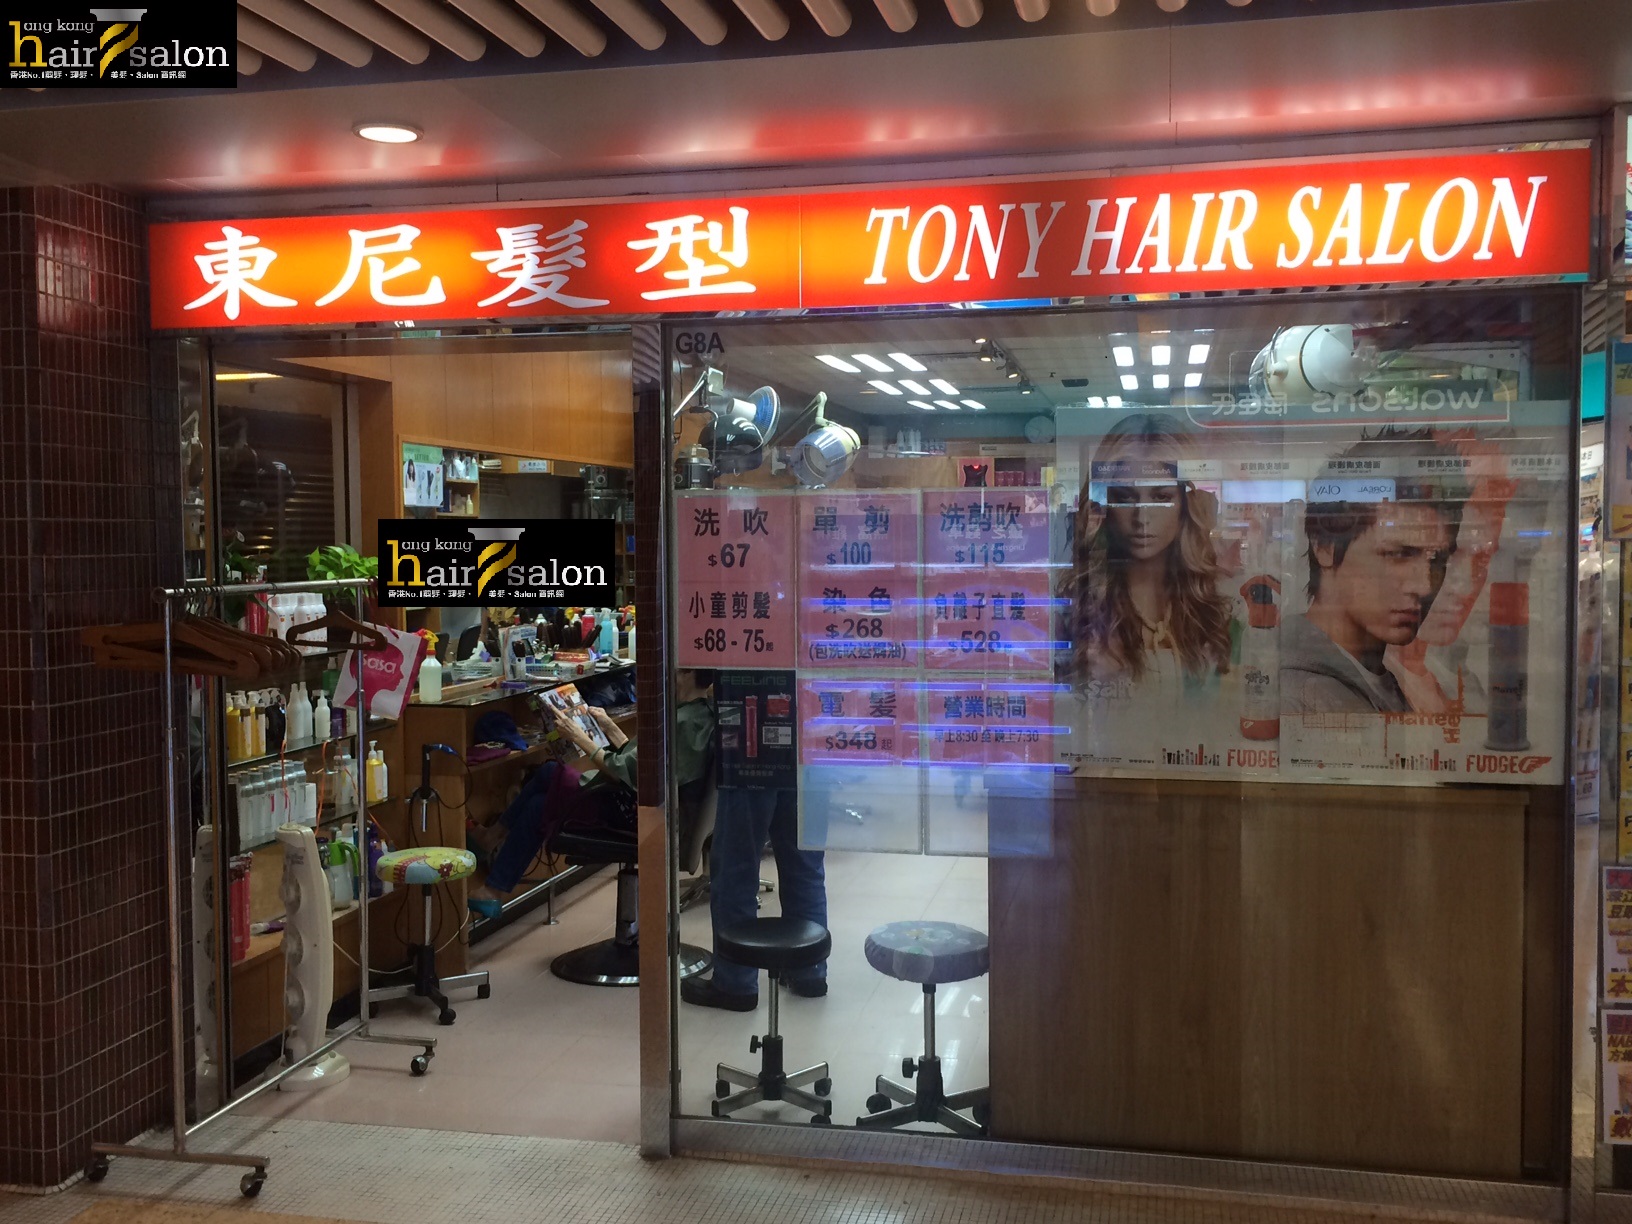 Haircut: 東尼髮型 Tony Hair Salon